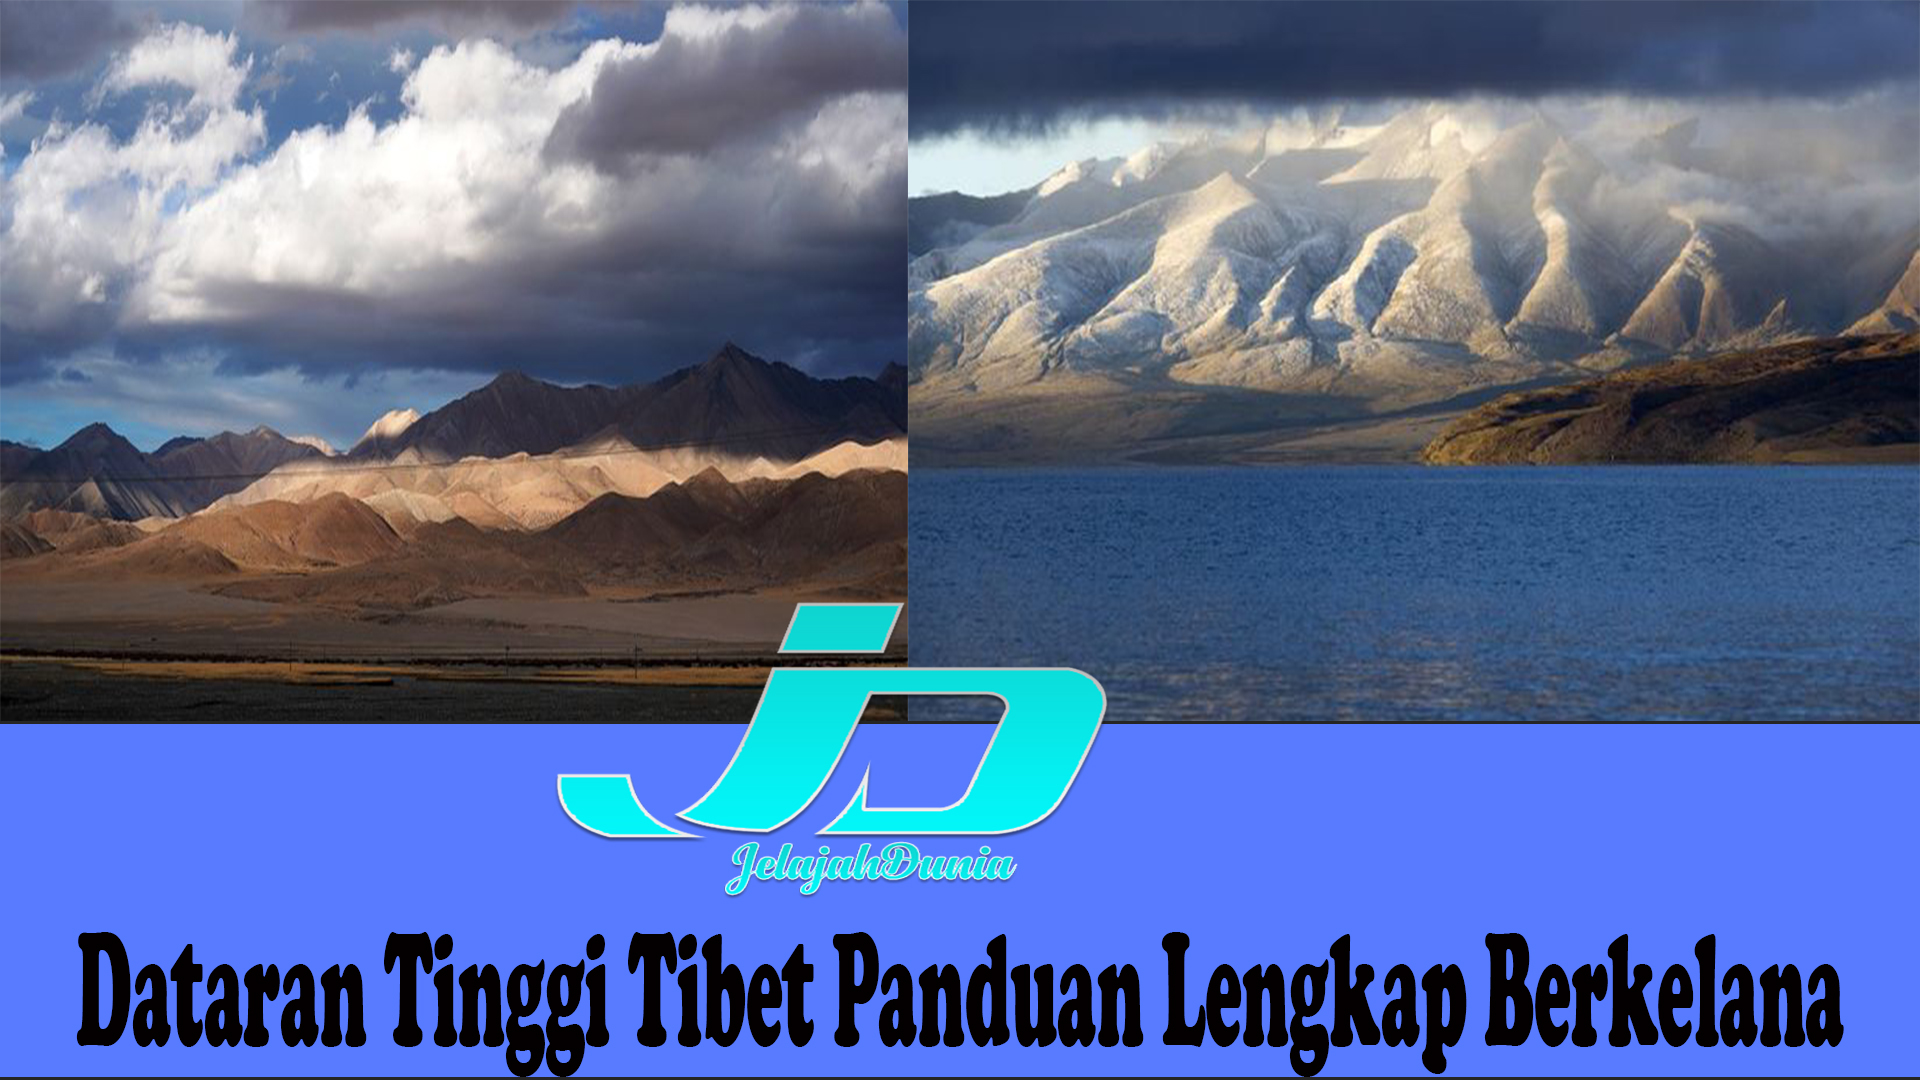 Dataran Tinggi Tibet Panduan Lengkap Berkelana